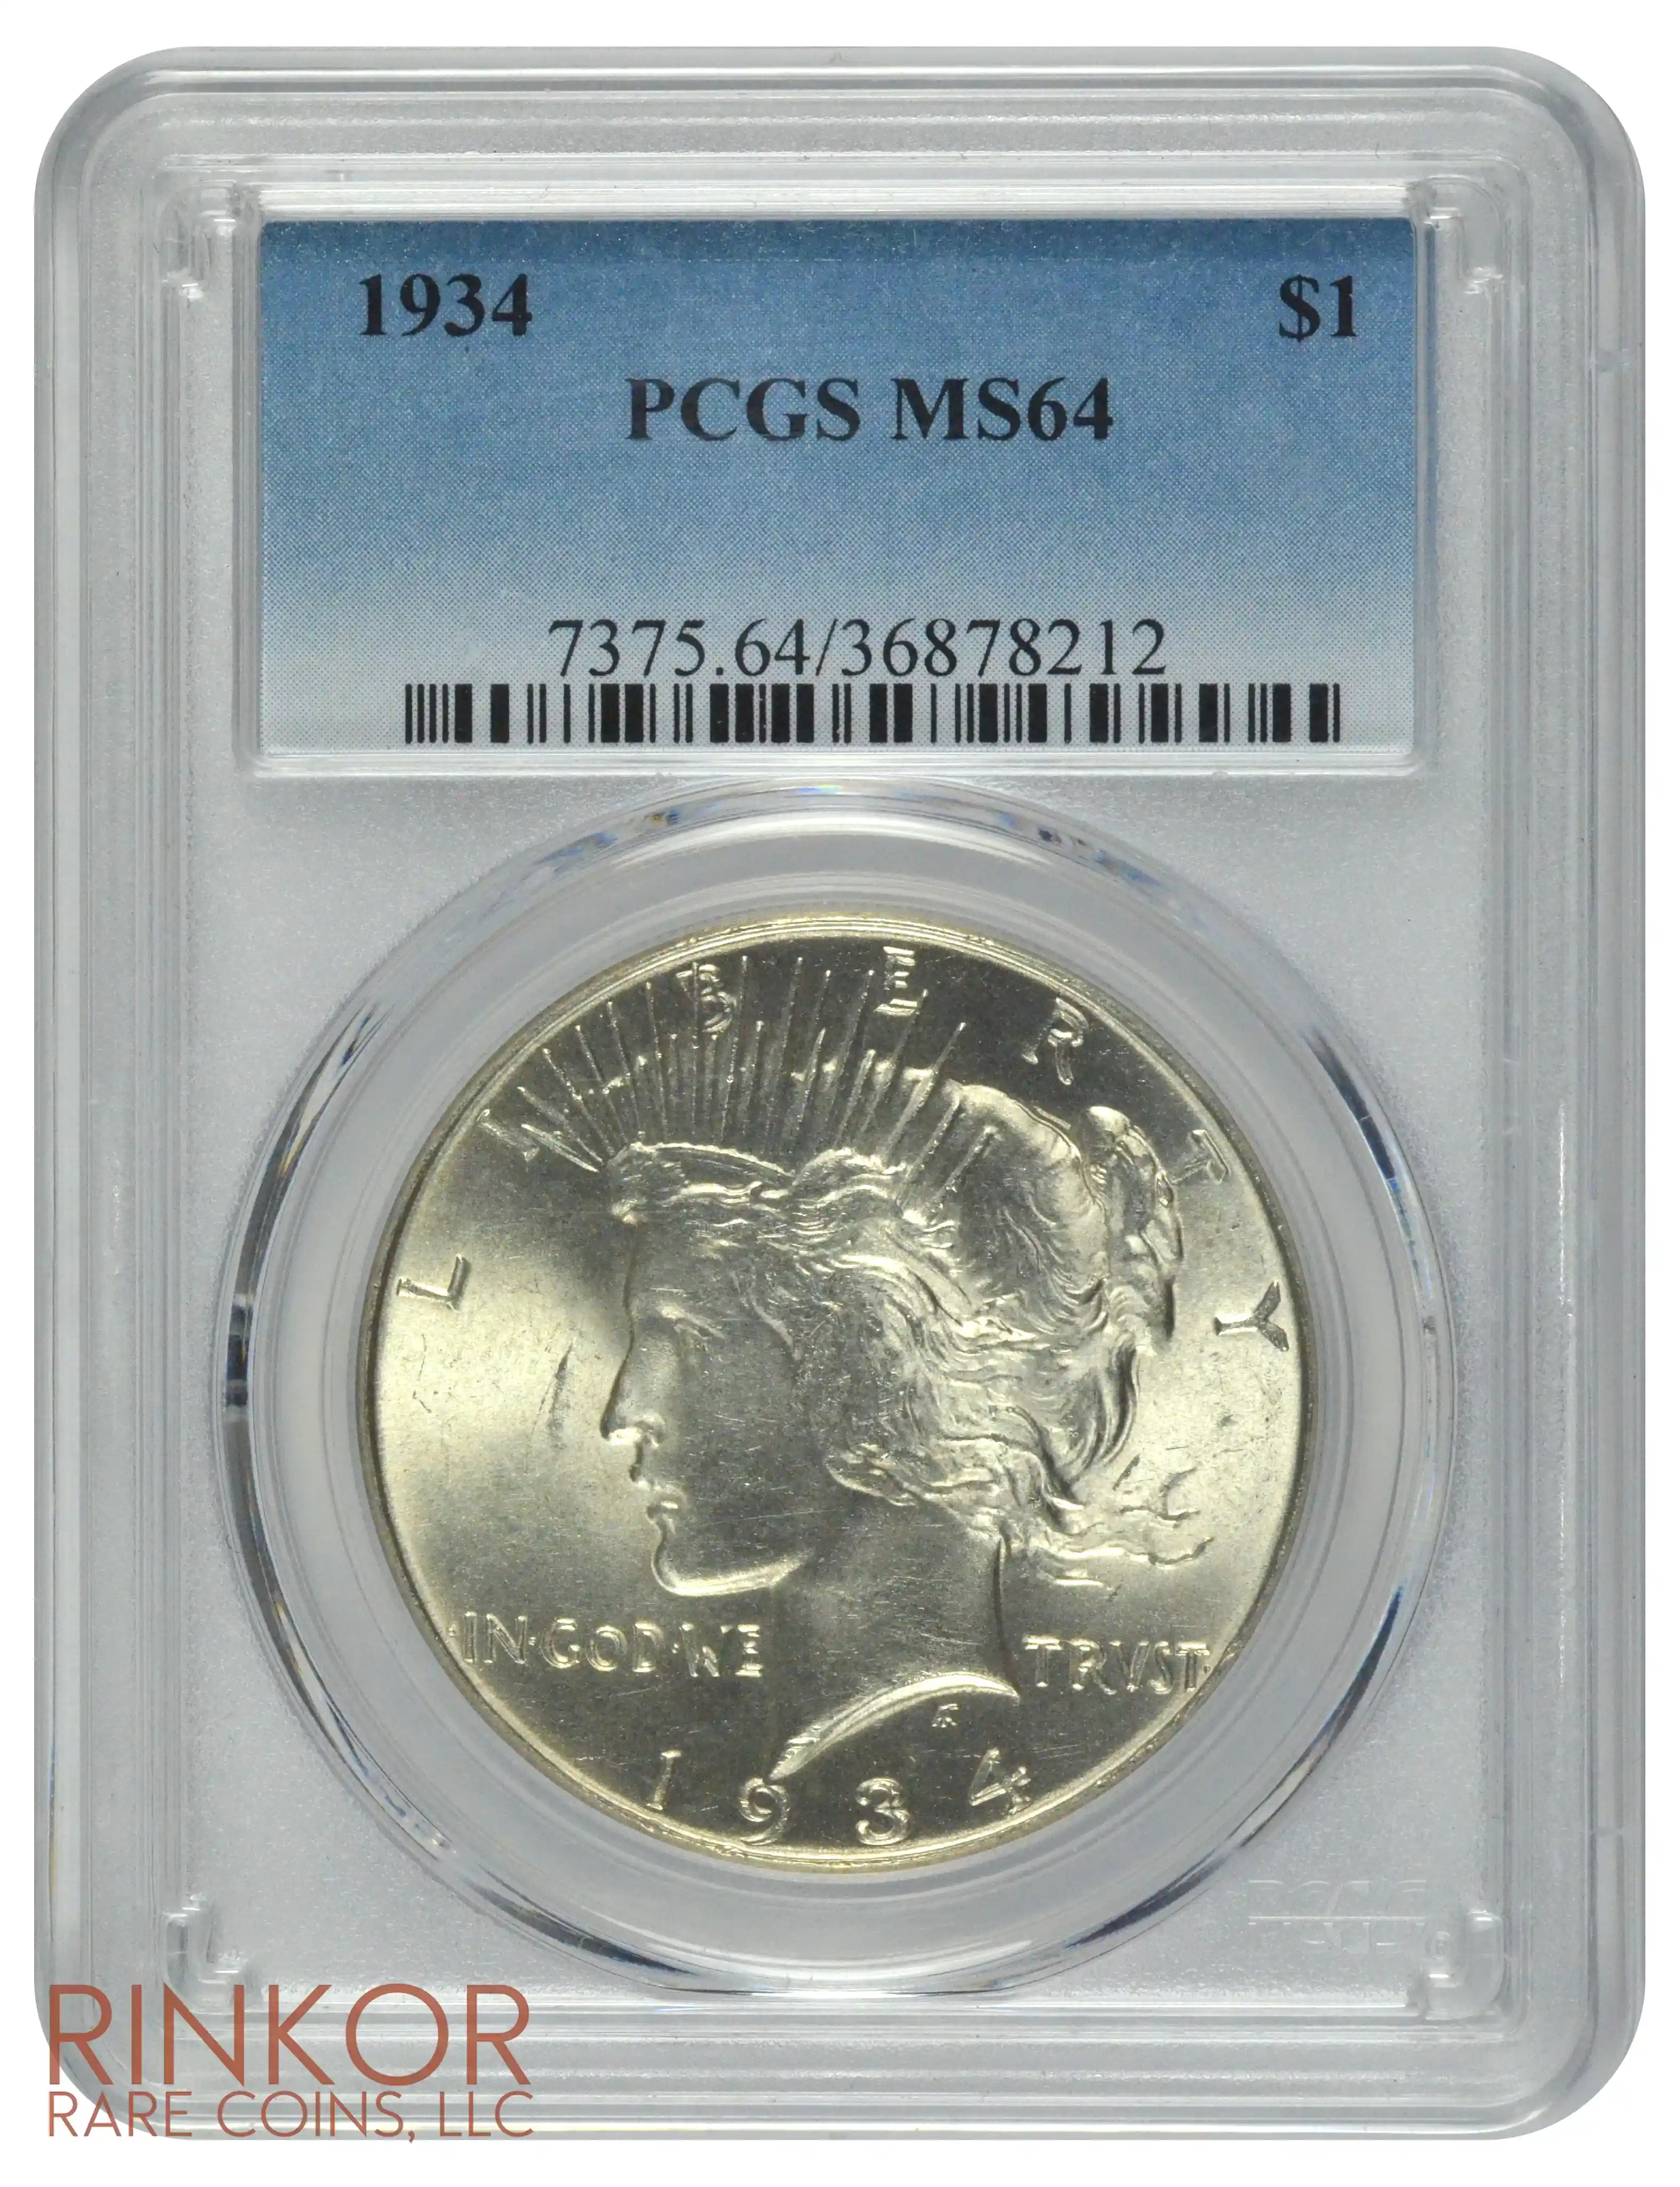 1934 $1 PCGS MS 64